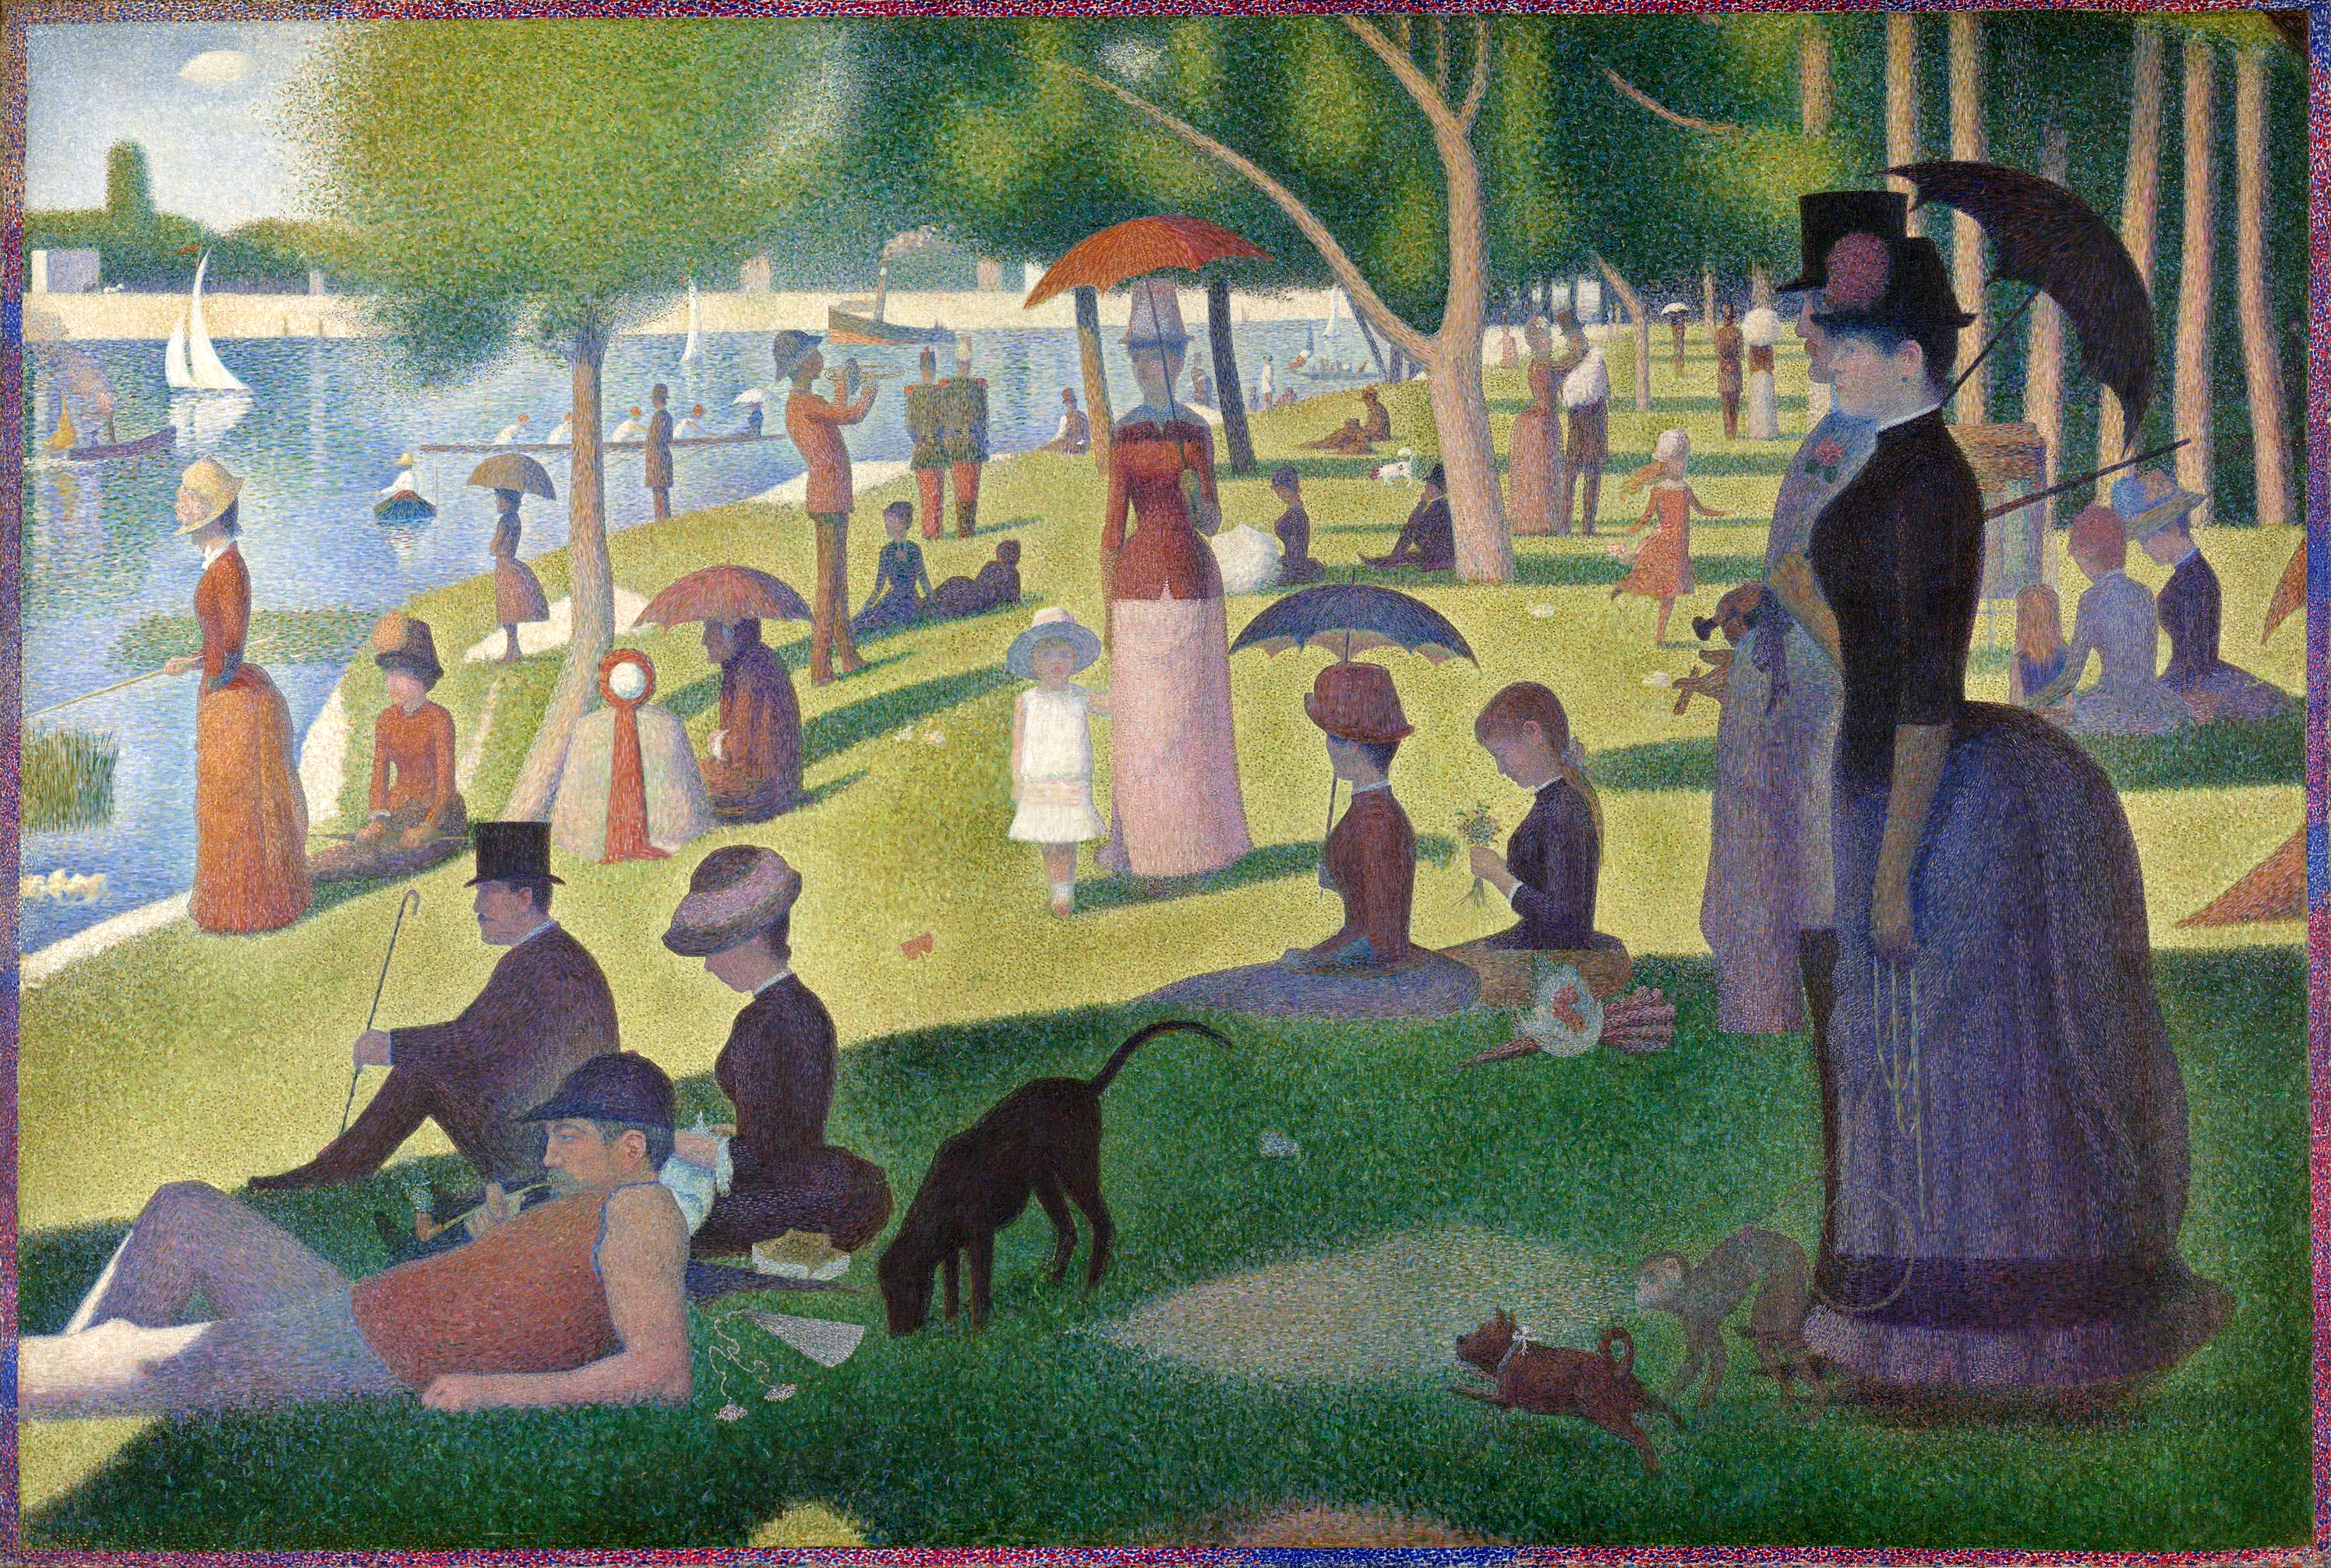 Un dimanche après-midi sur l'île de La Grande Jatte by Georges Seurat - c. 1884-1886 - 207,5 x 208 cm Art Institute of Chicago